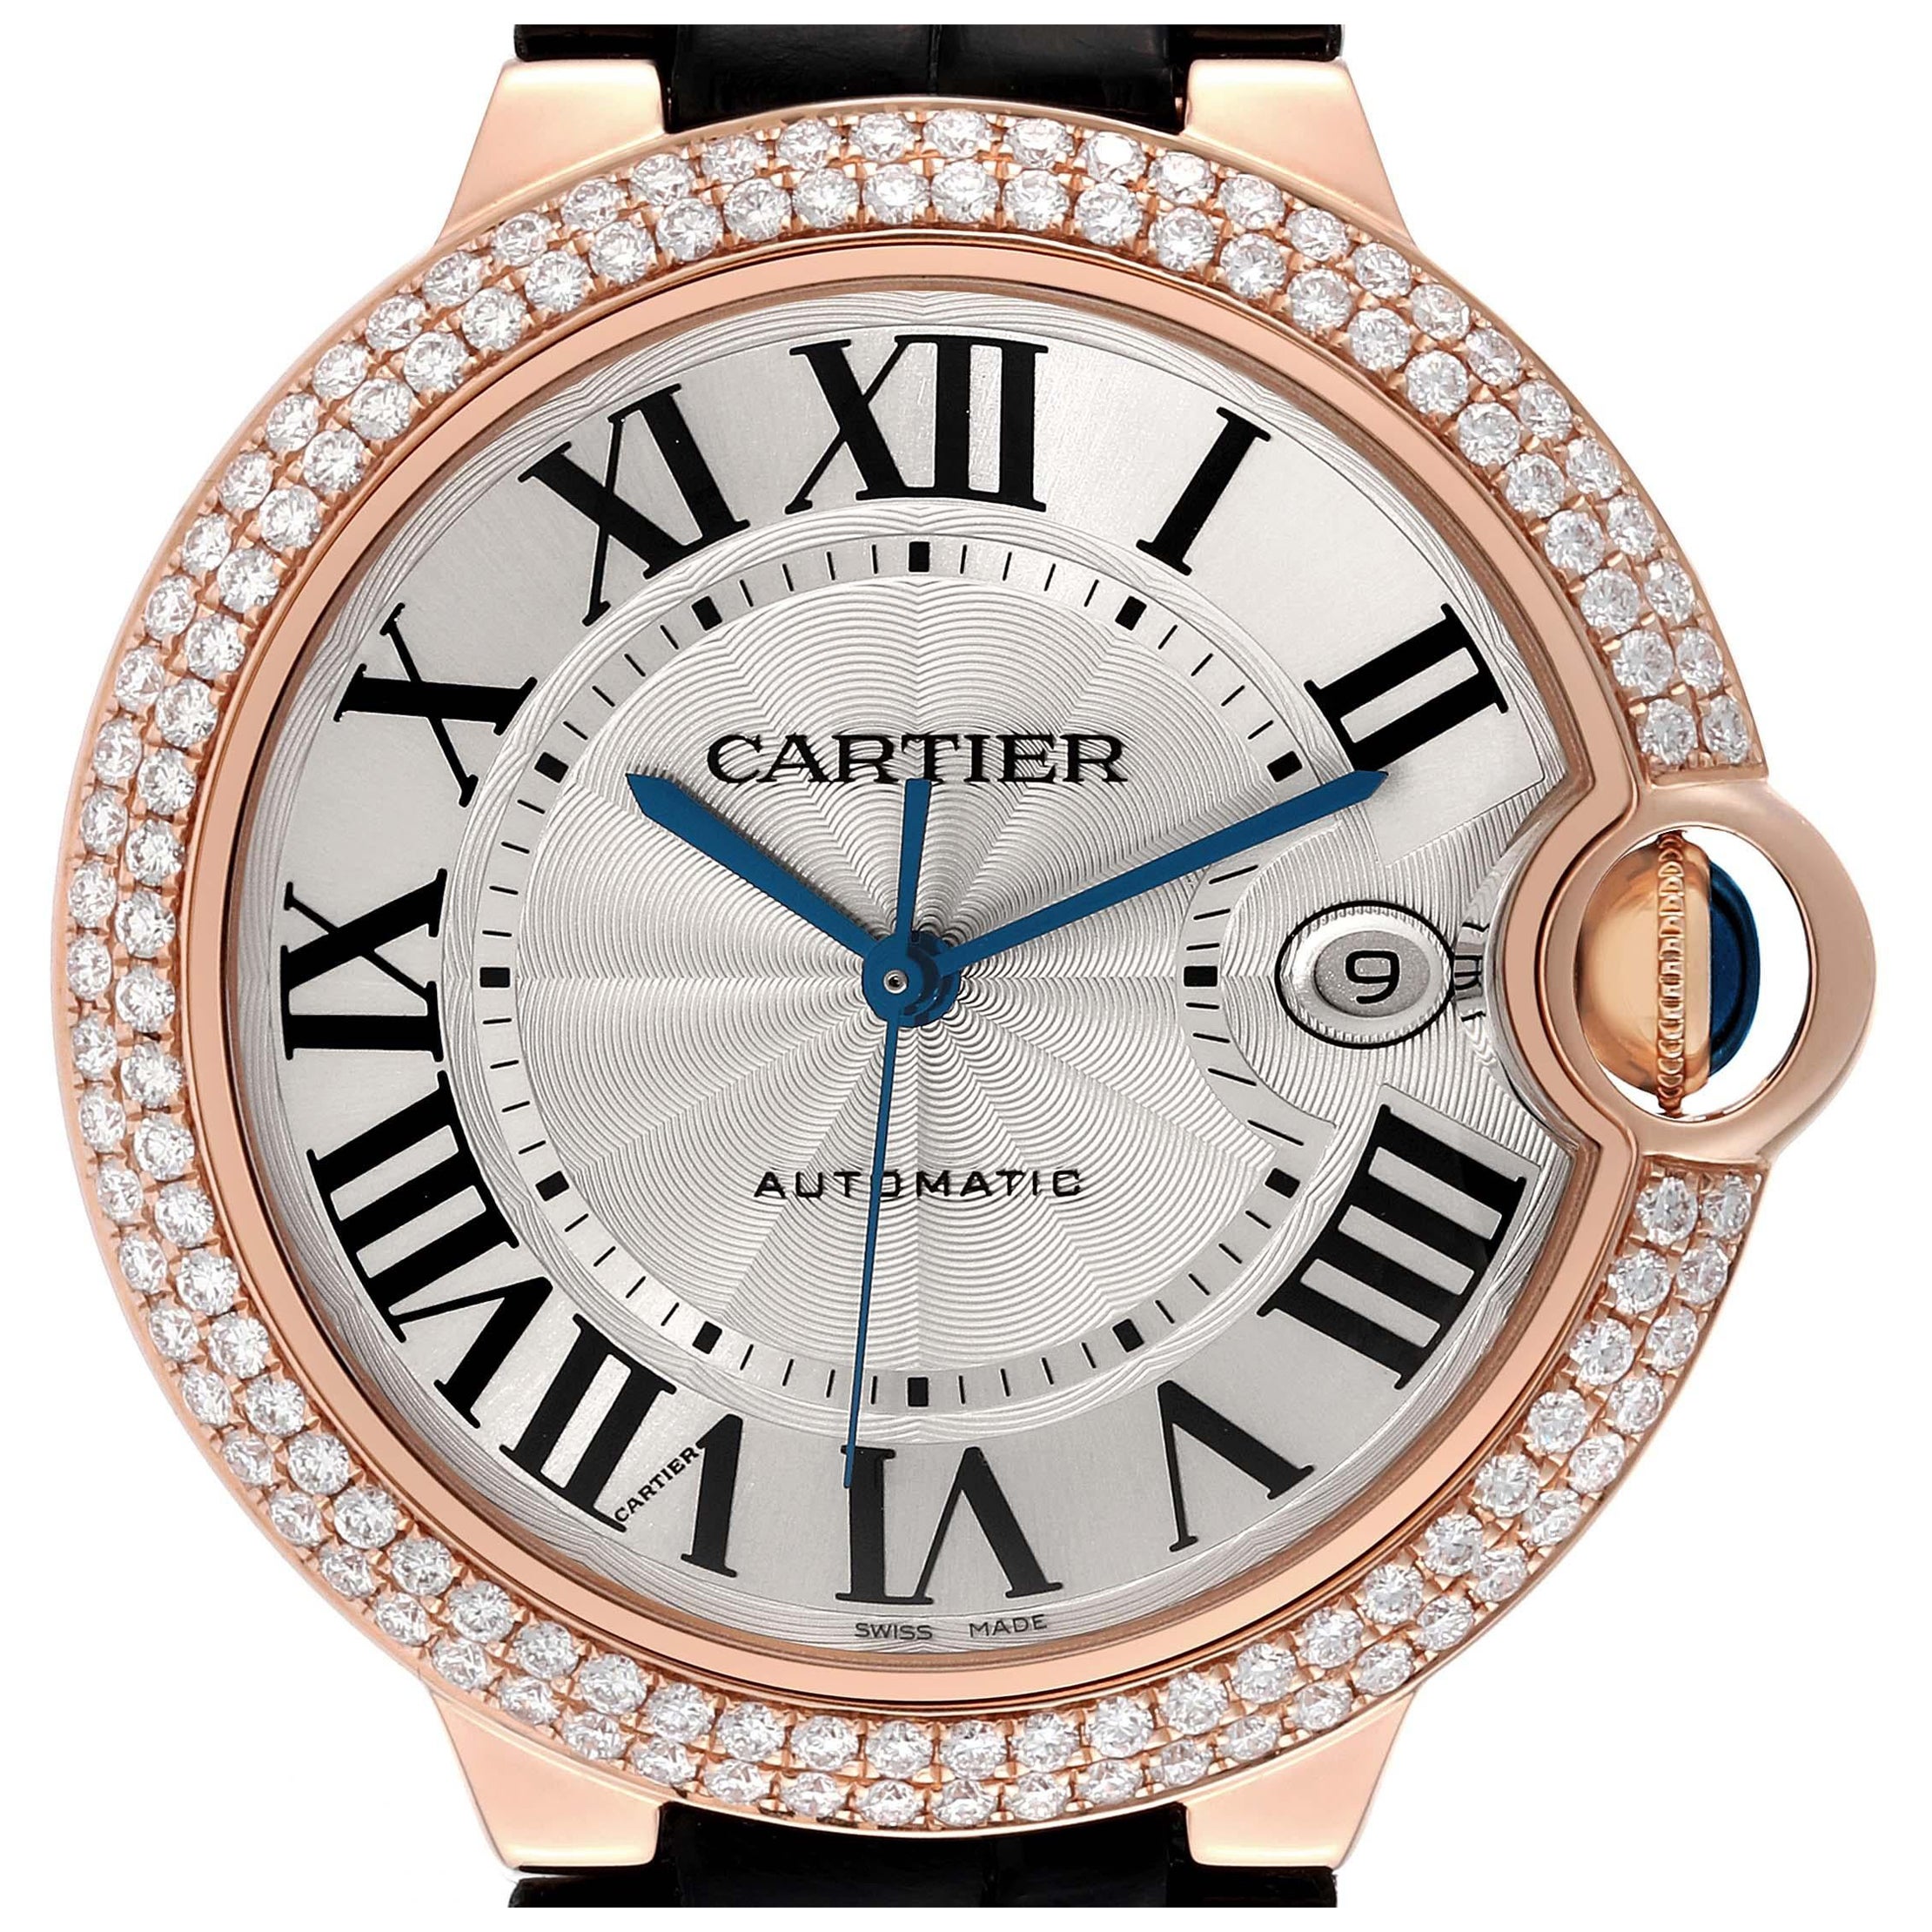 Cartier Ballon Bleu 42mm Rose Gold Diamond Mens Watch WE900851 Box Card